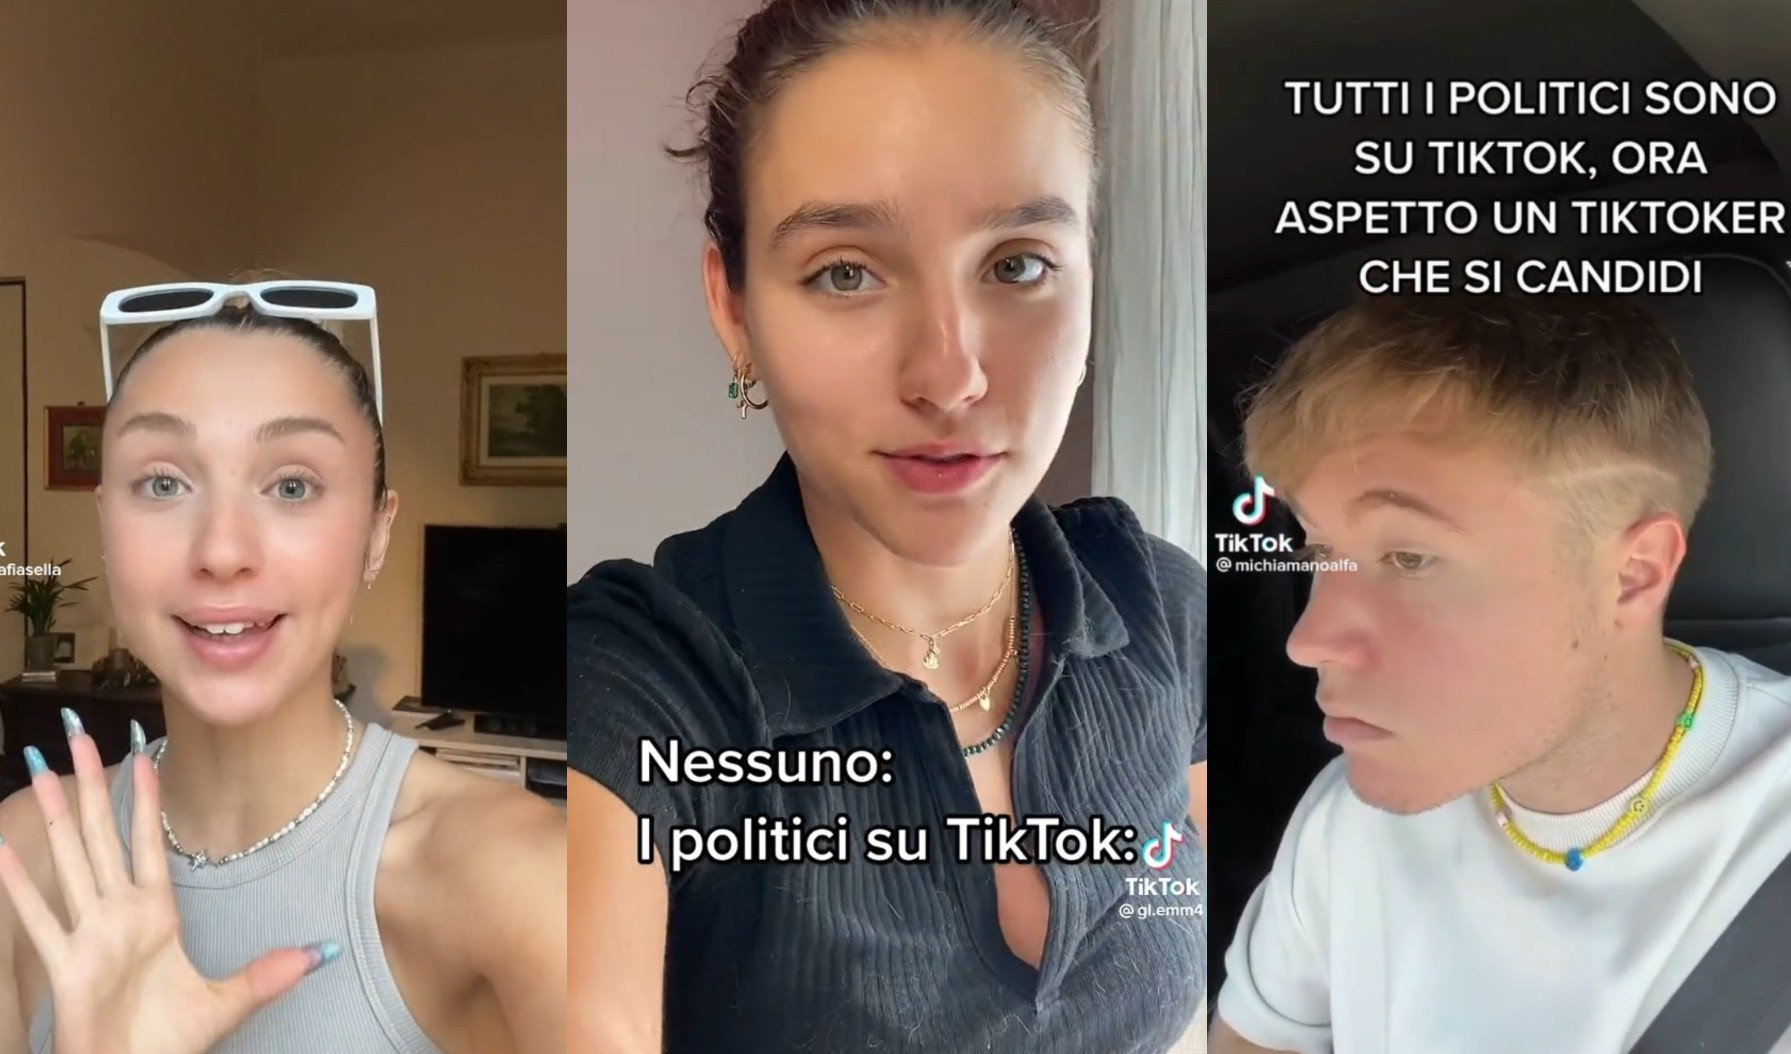 Politici su TikTok, la reazione dei giovani: 